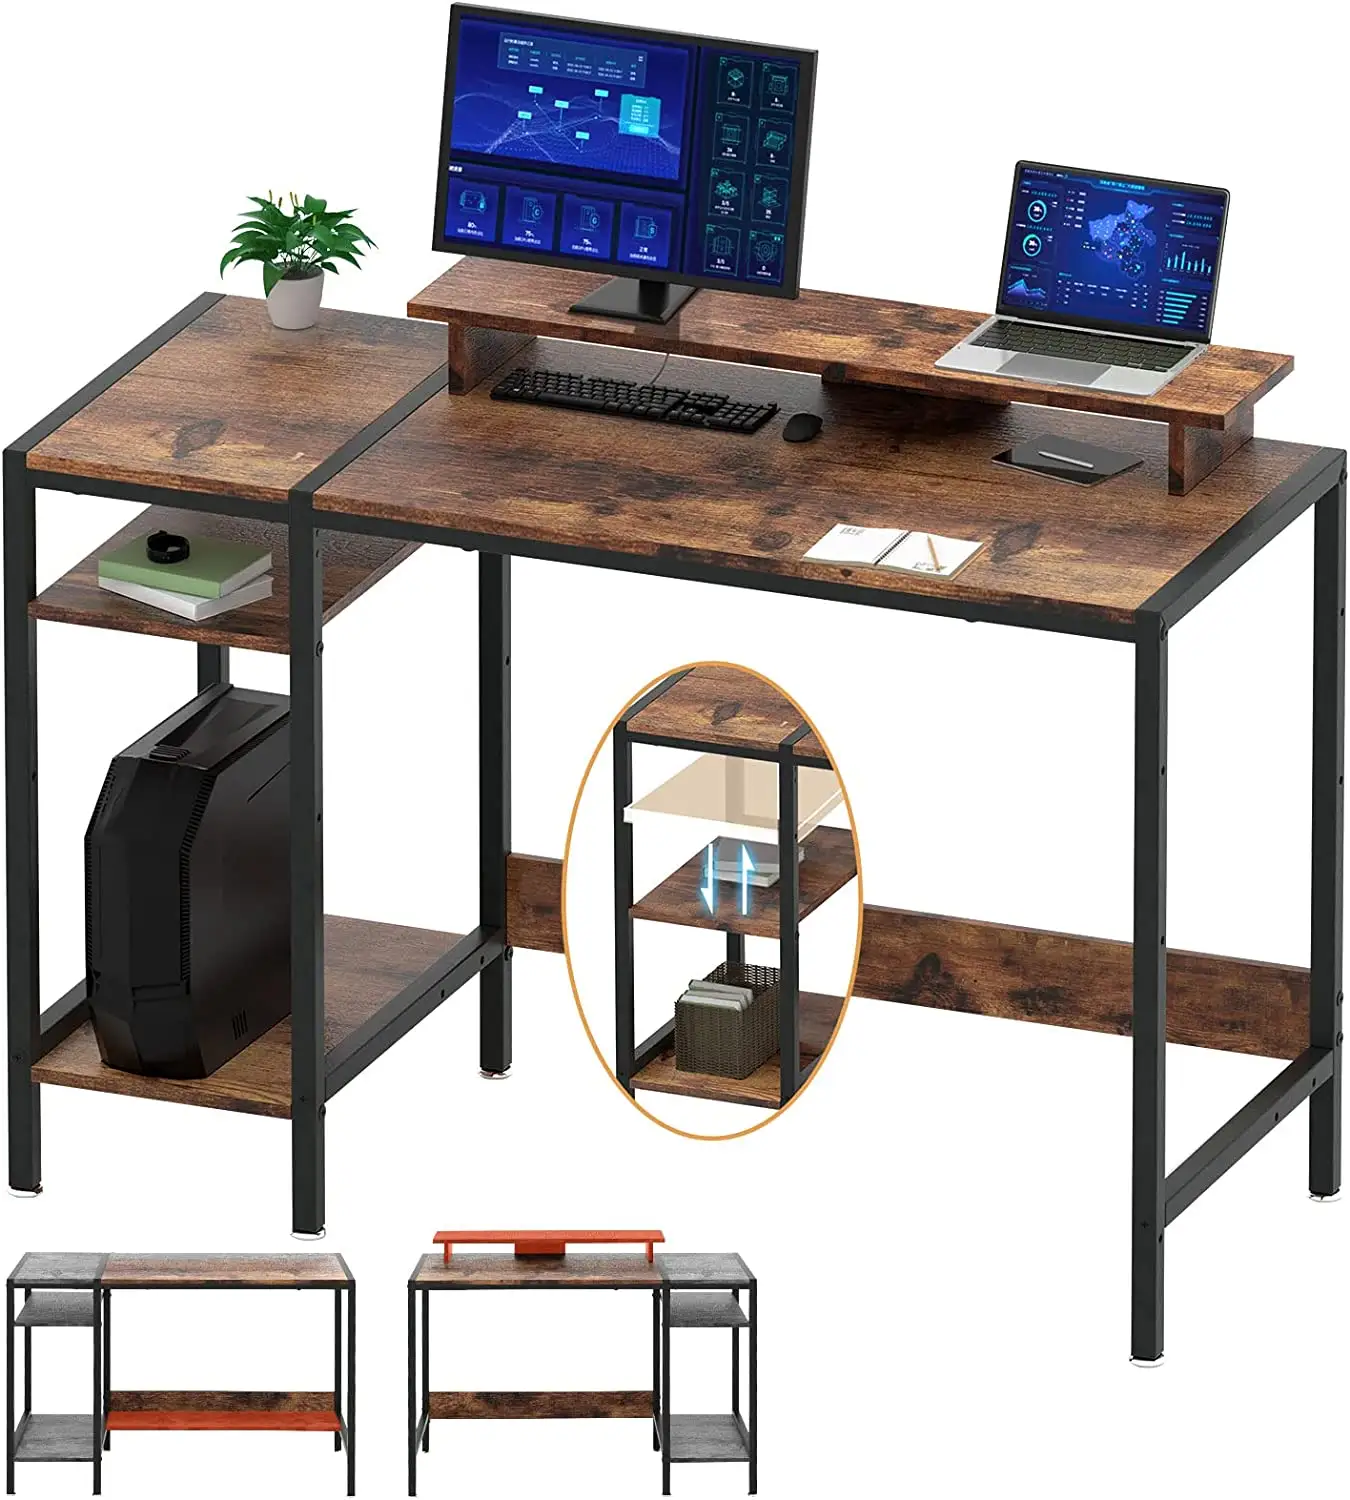 Рабочий стол для дома и офиса, небольшой стол для хранения вещей, Большой Угловой письменный стол для 2 мониторов в деревенском стиле